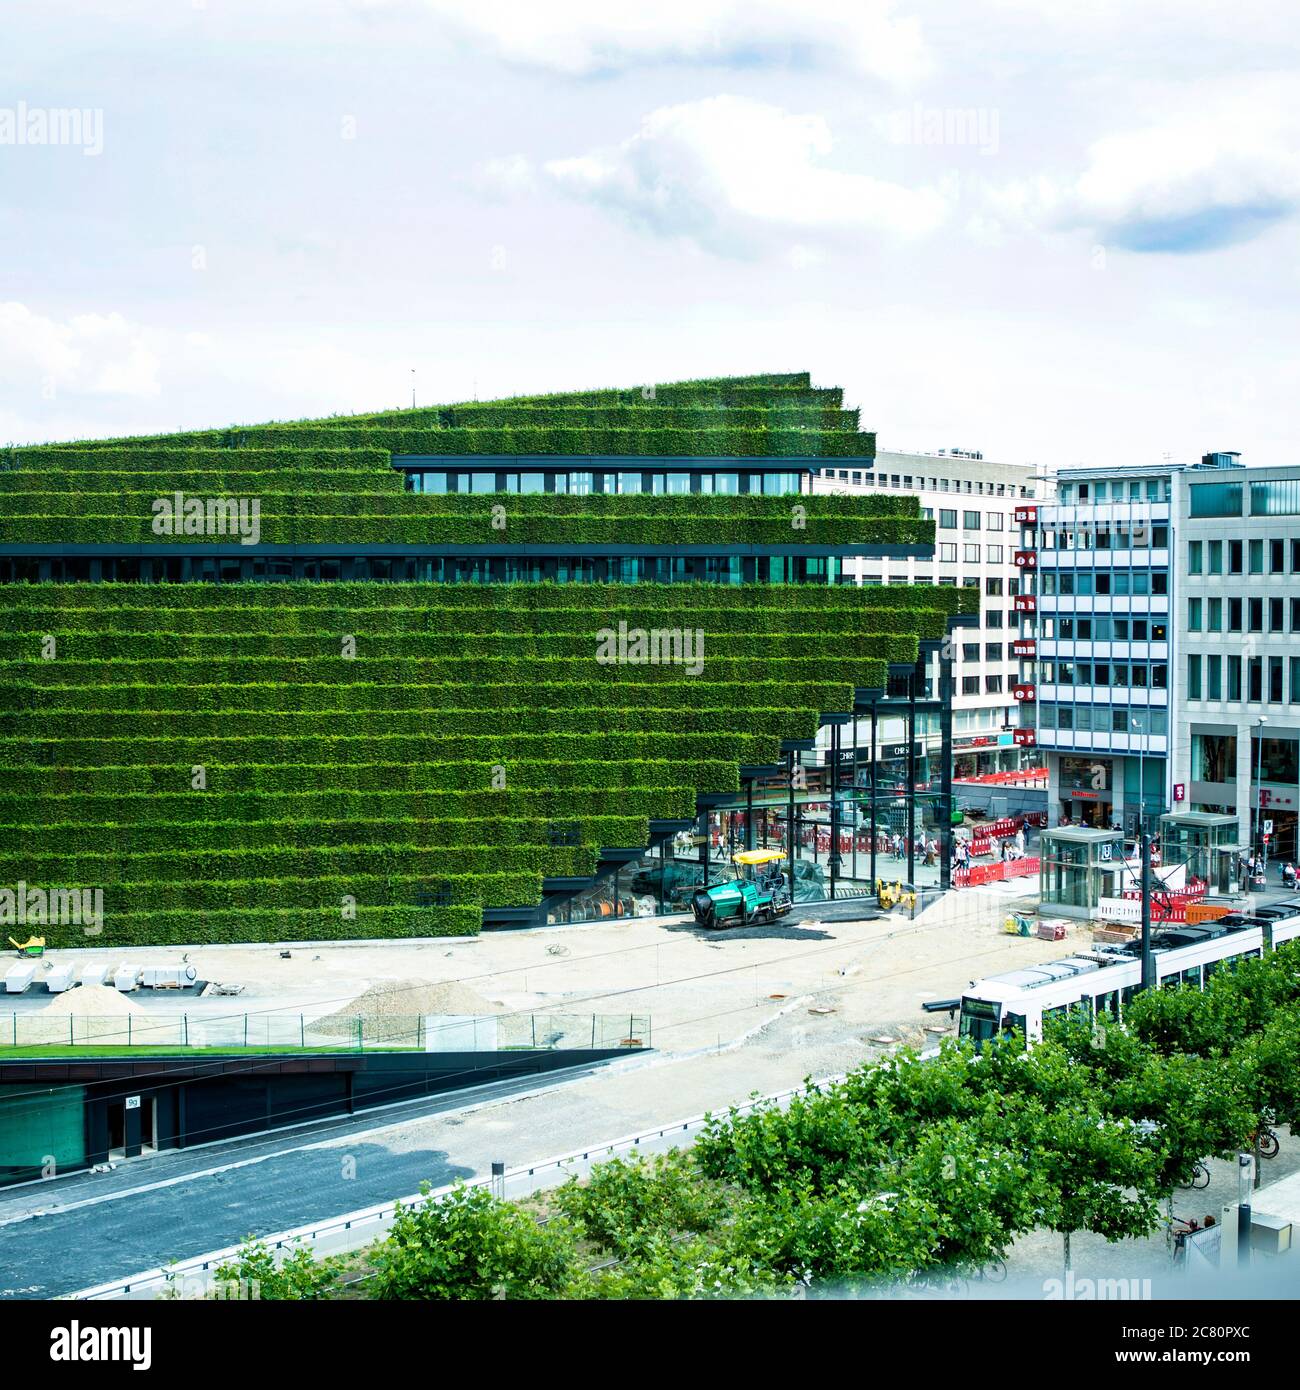 Die größte Grünfassade Europas ensteht in Düsseldorf am Kö-Bogen 2. Die Architekten von Ingenhoven gestalten die City neu. Foto Stock